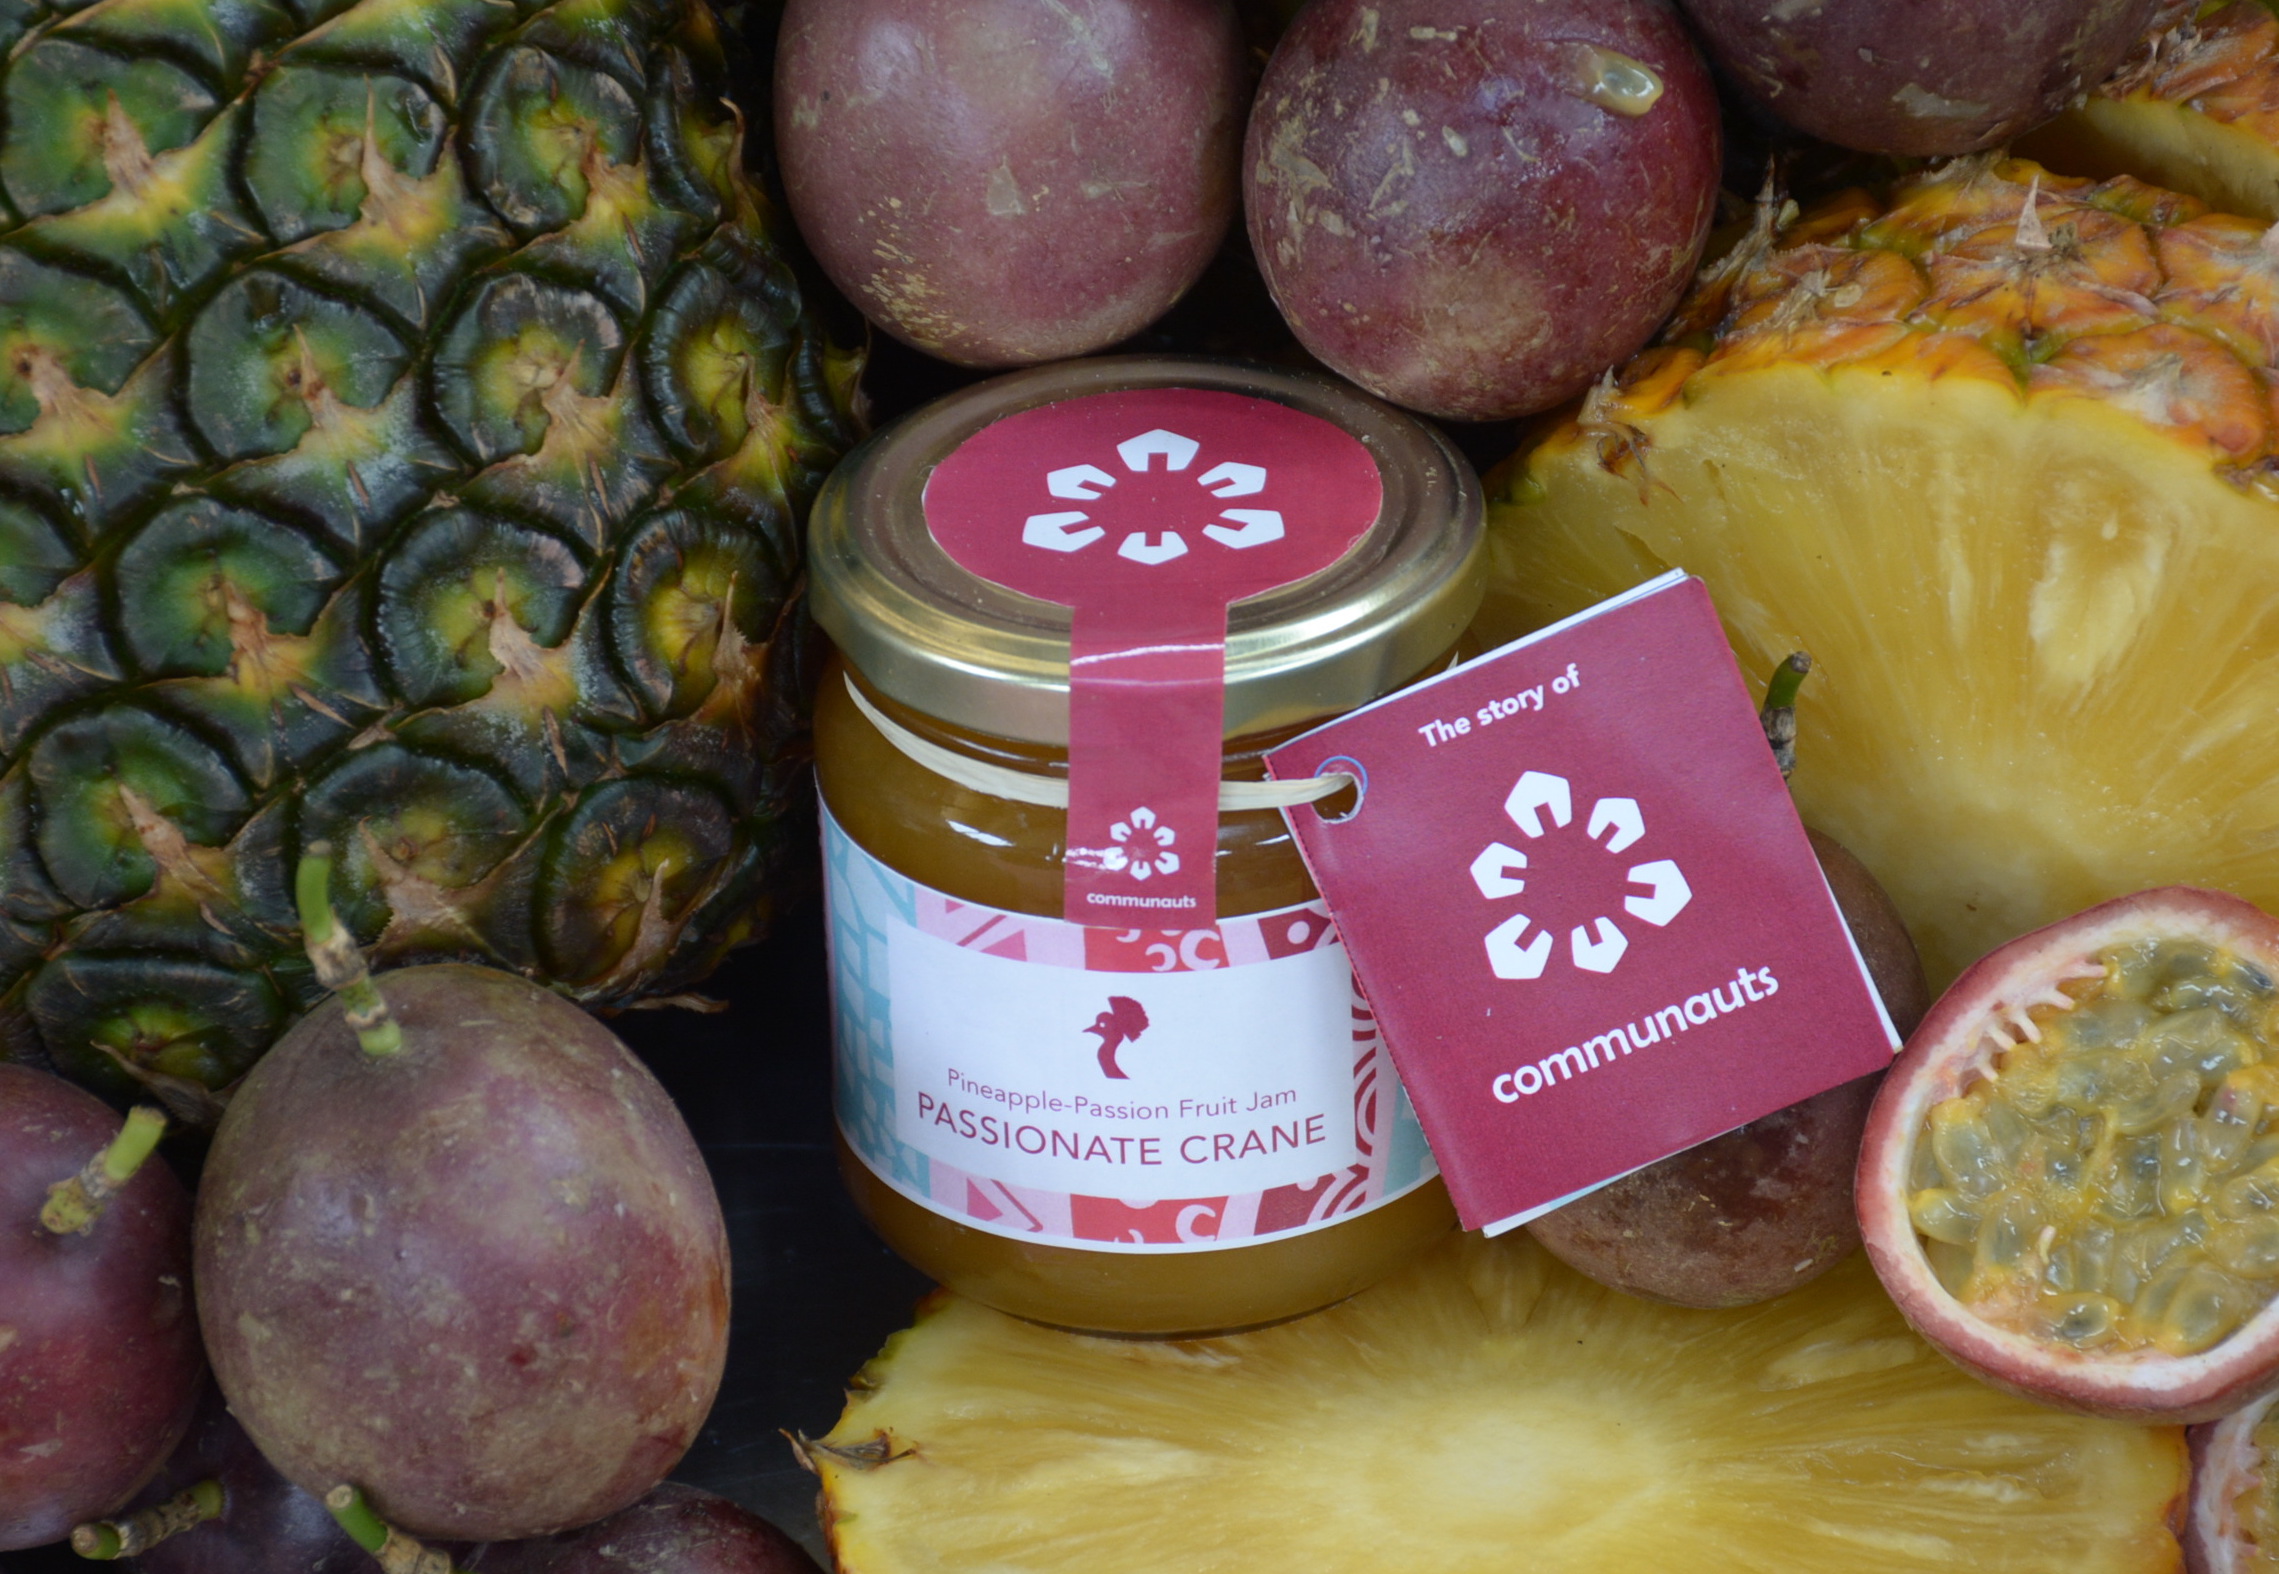 Passionate Crane Passionfruit Pineapple Jam